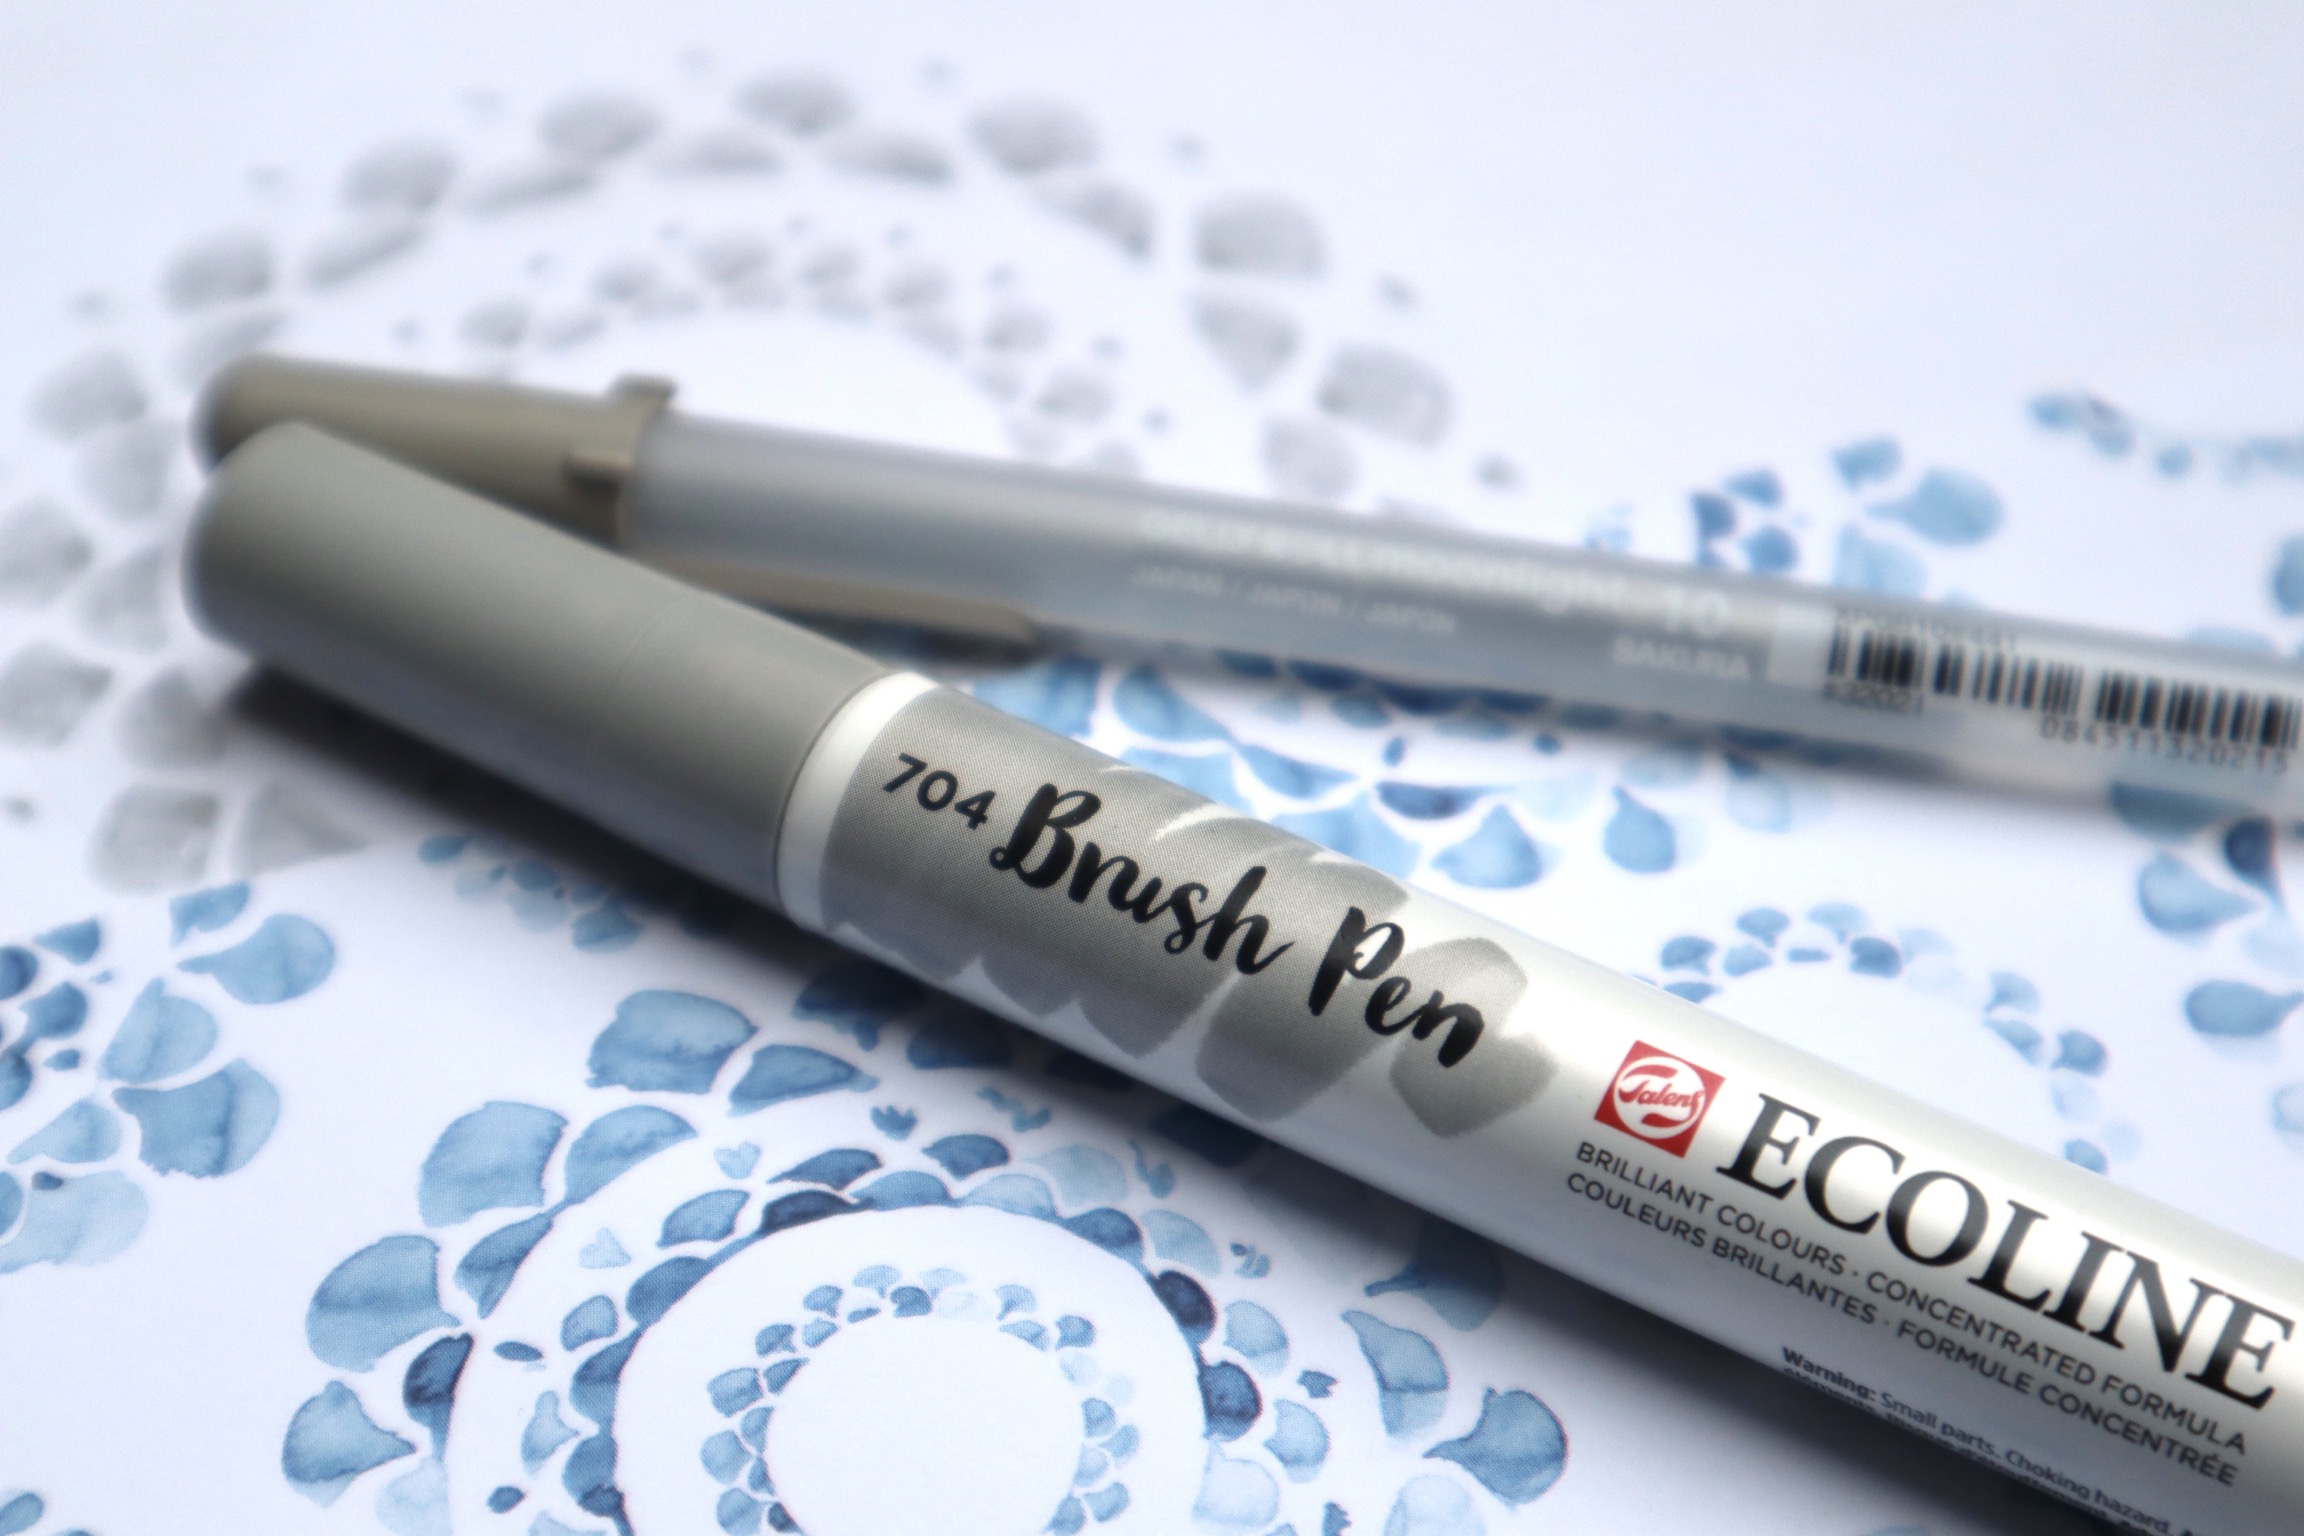 Testreihe Kreativbücher Ecoline Brush Pen